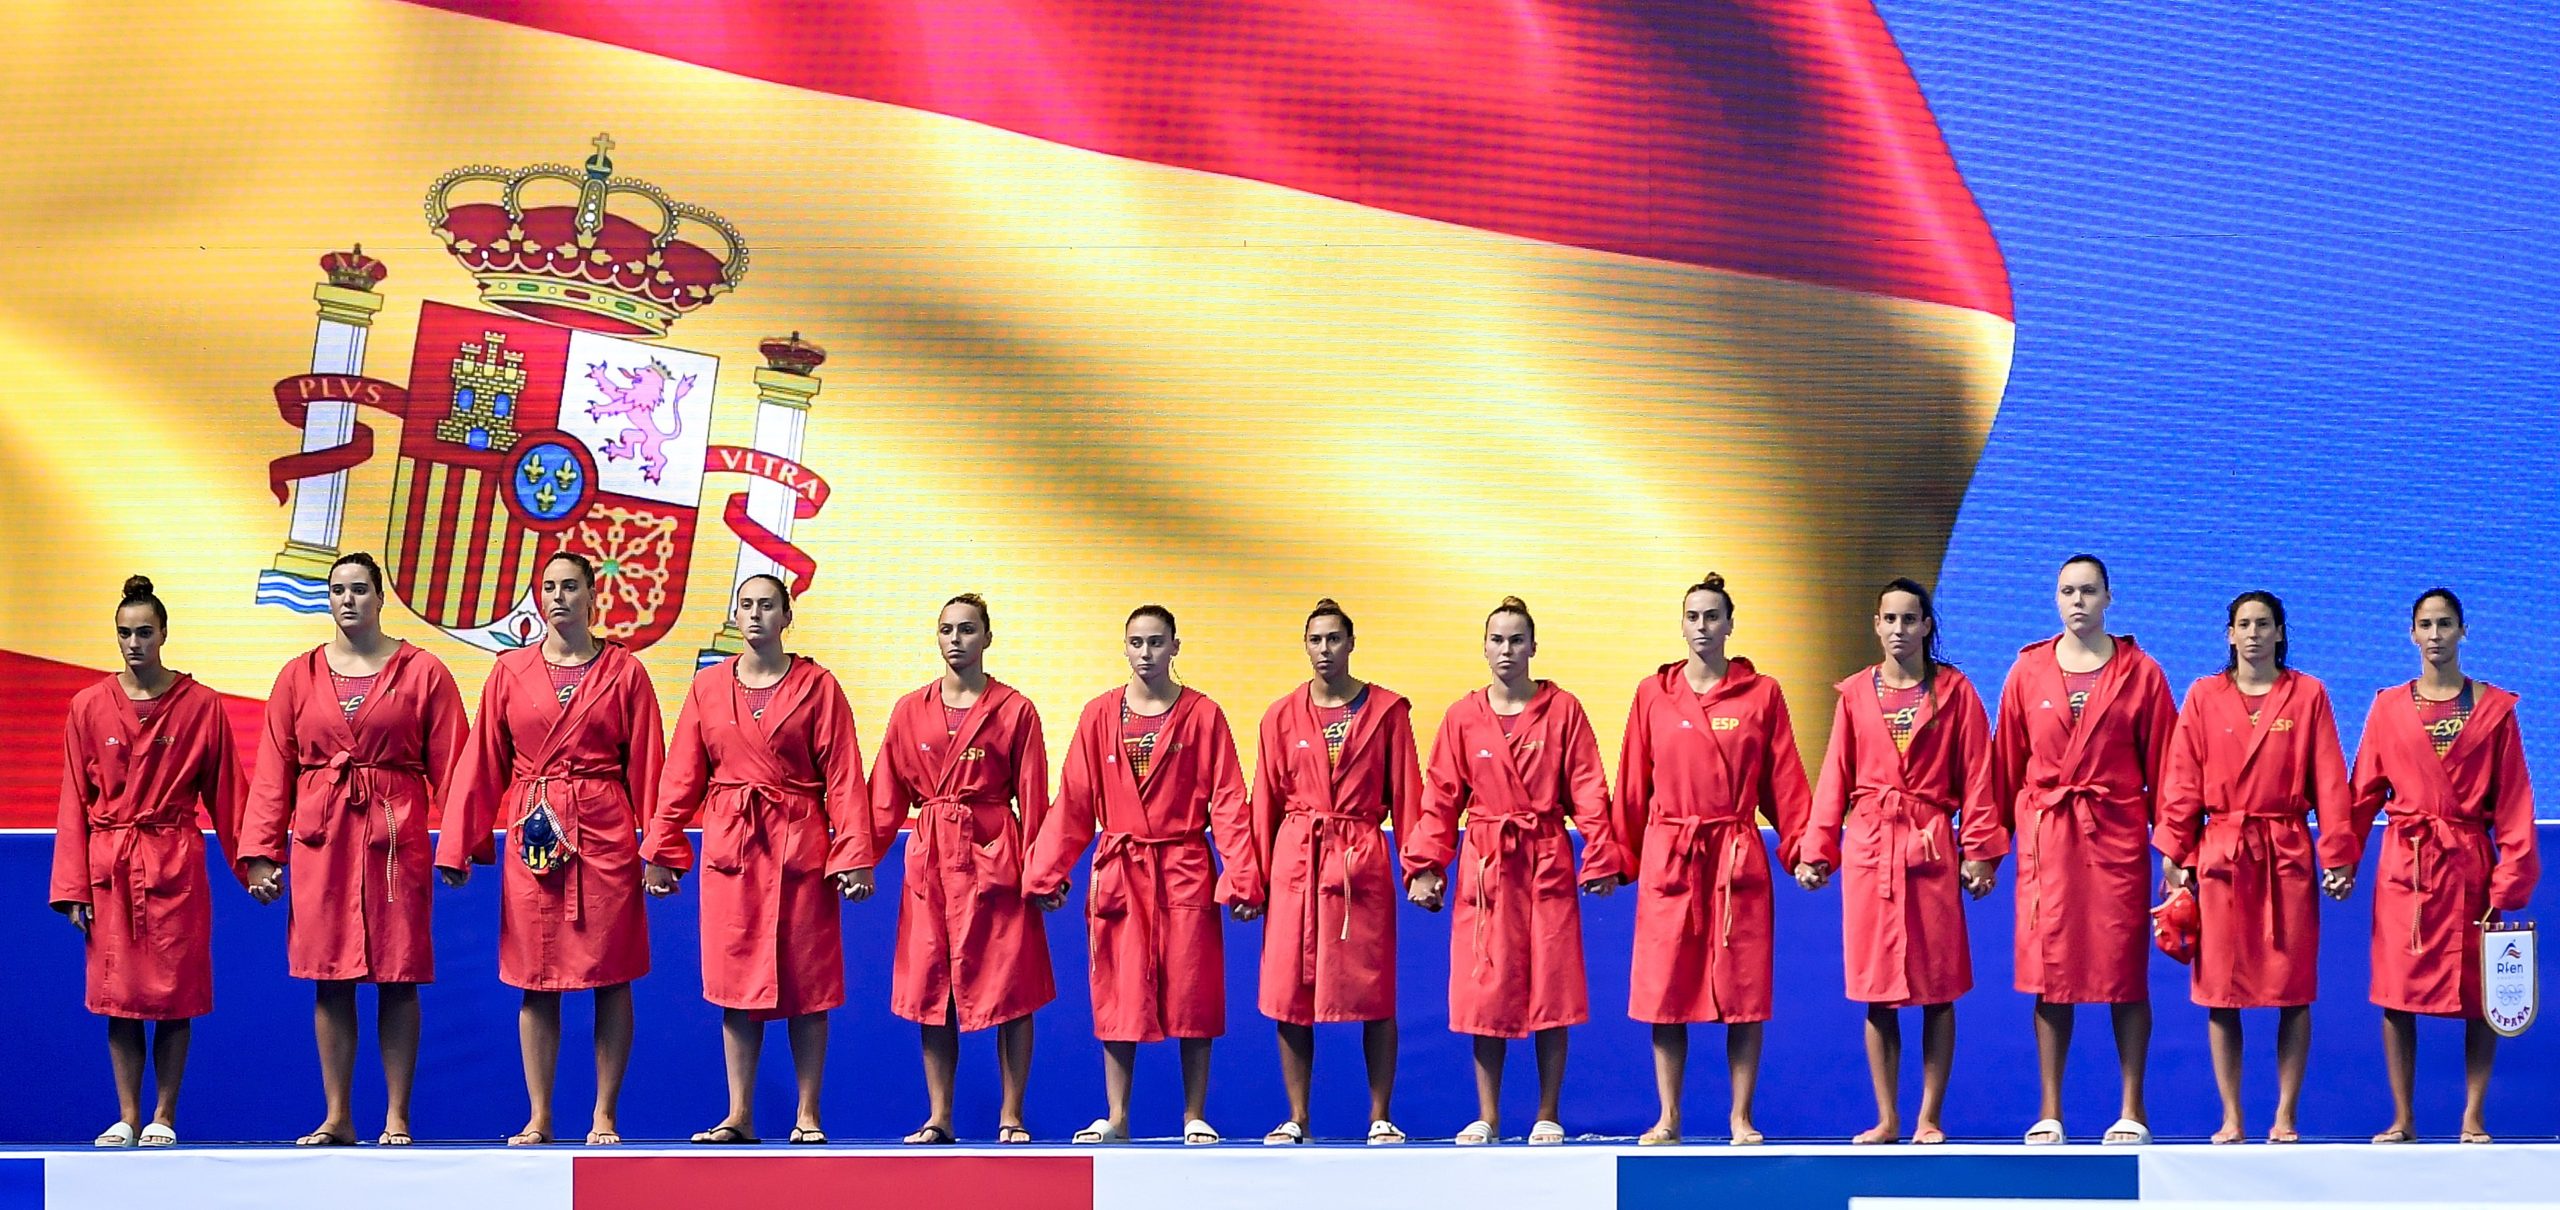 Tenerife albergará la Superfinal de la World League femenina (2-6 de noviembre)